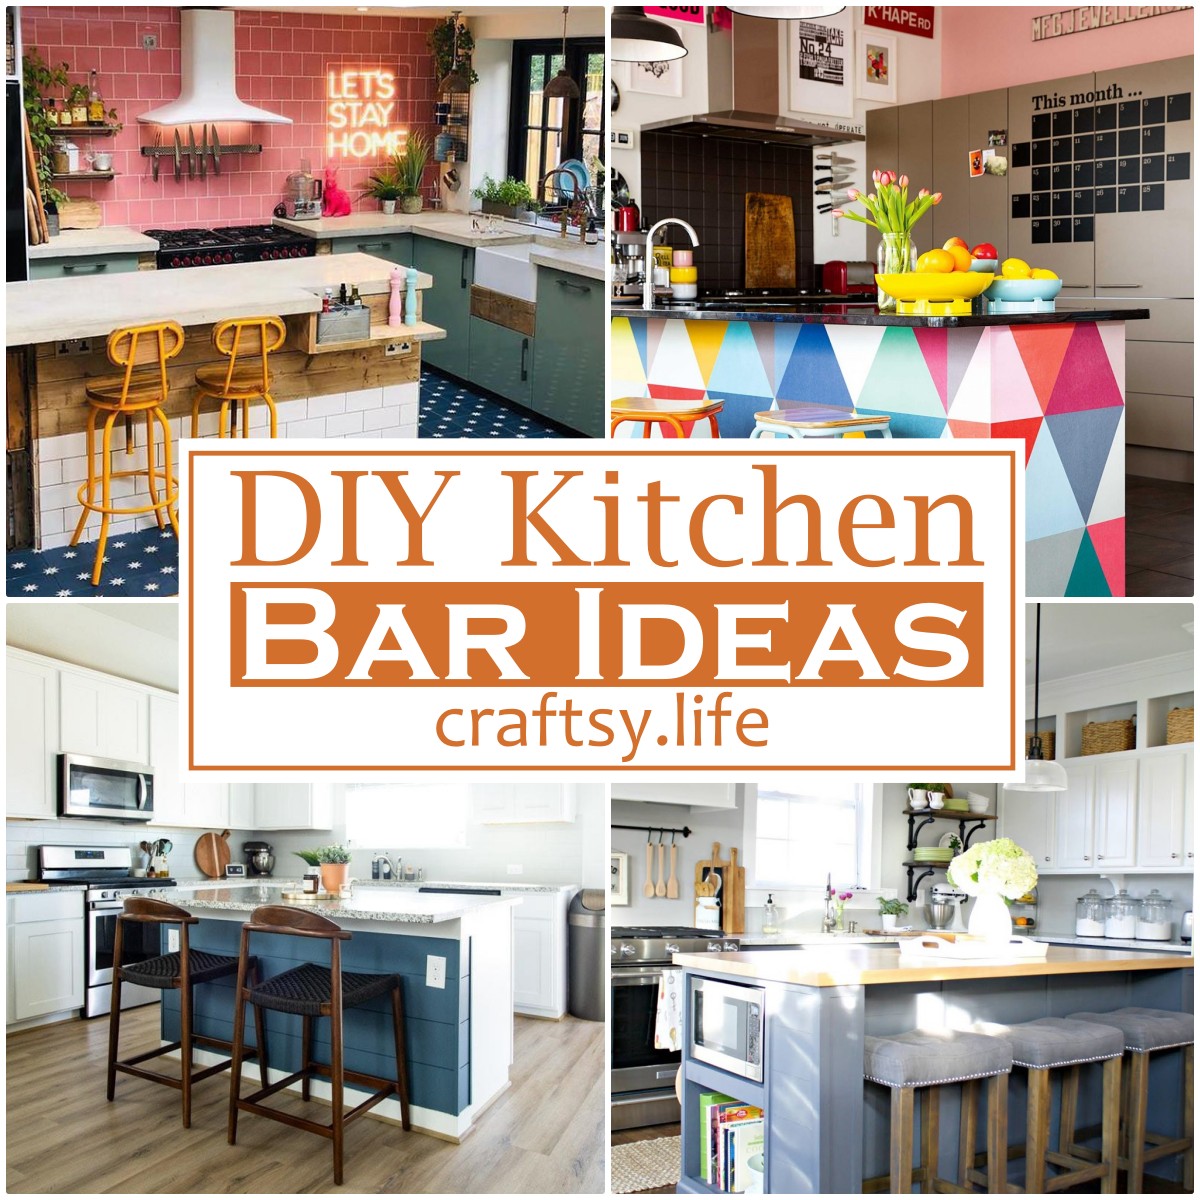 DIY Kitchen Bar Ideas